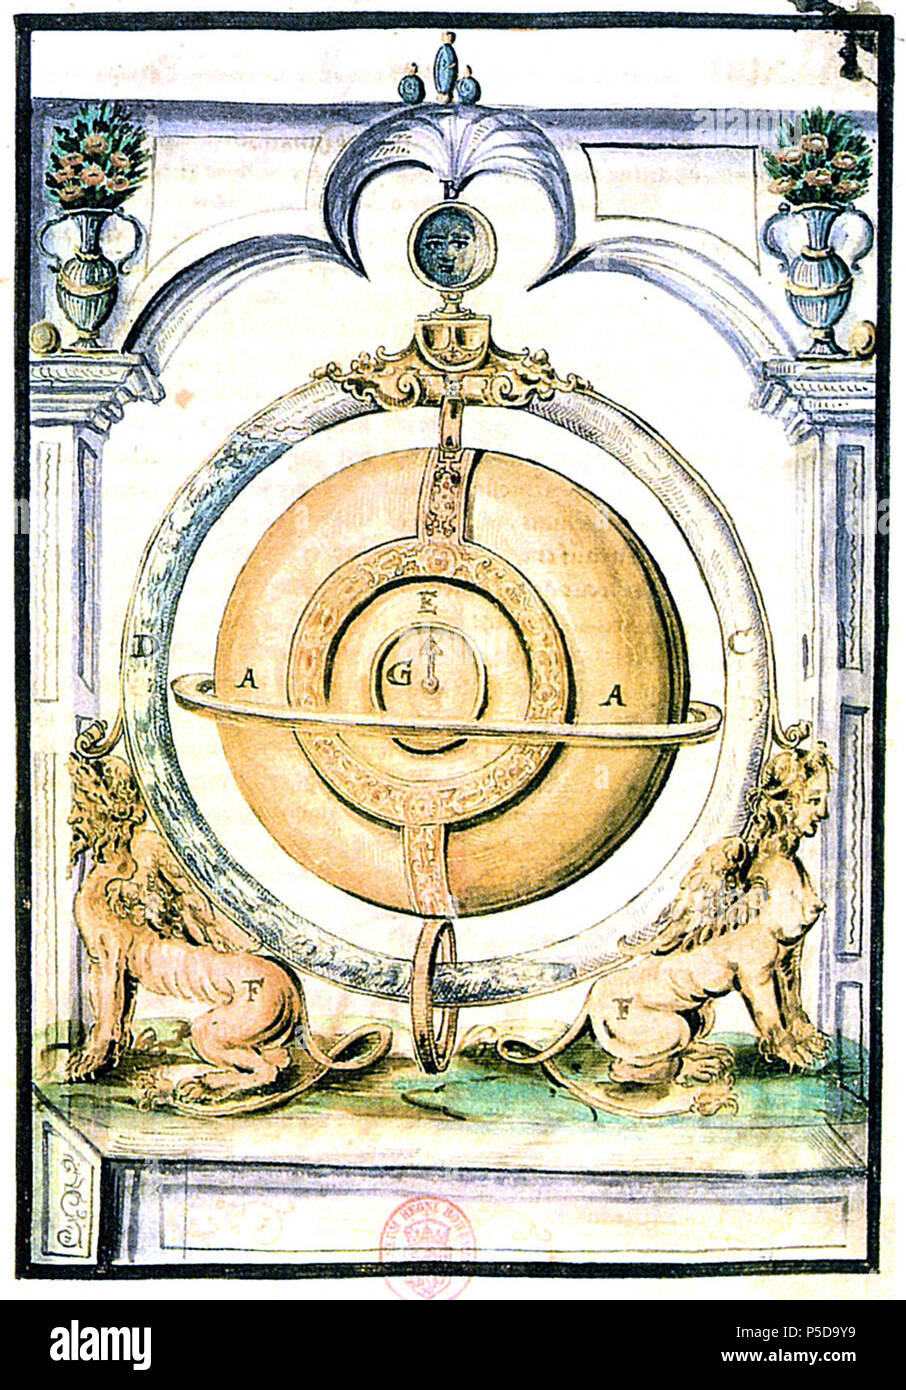 N/A. Inglese: l'orologio barometrica di Cornelis Drebbel brevettato in 1598 ed allora noto come "perpetuum mobile". Stampare da Hiesserle von Choda (1557-1665). tra il 1557 e il 1665. Hiesserle von Choda 471 Drebbel-Clock Foto Stock